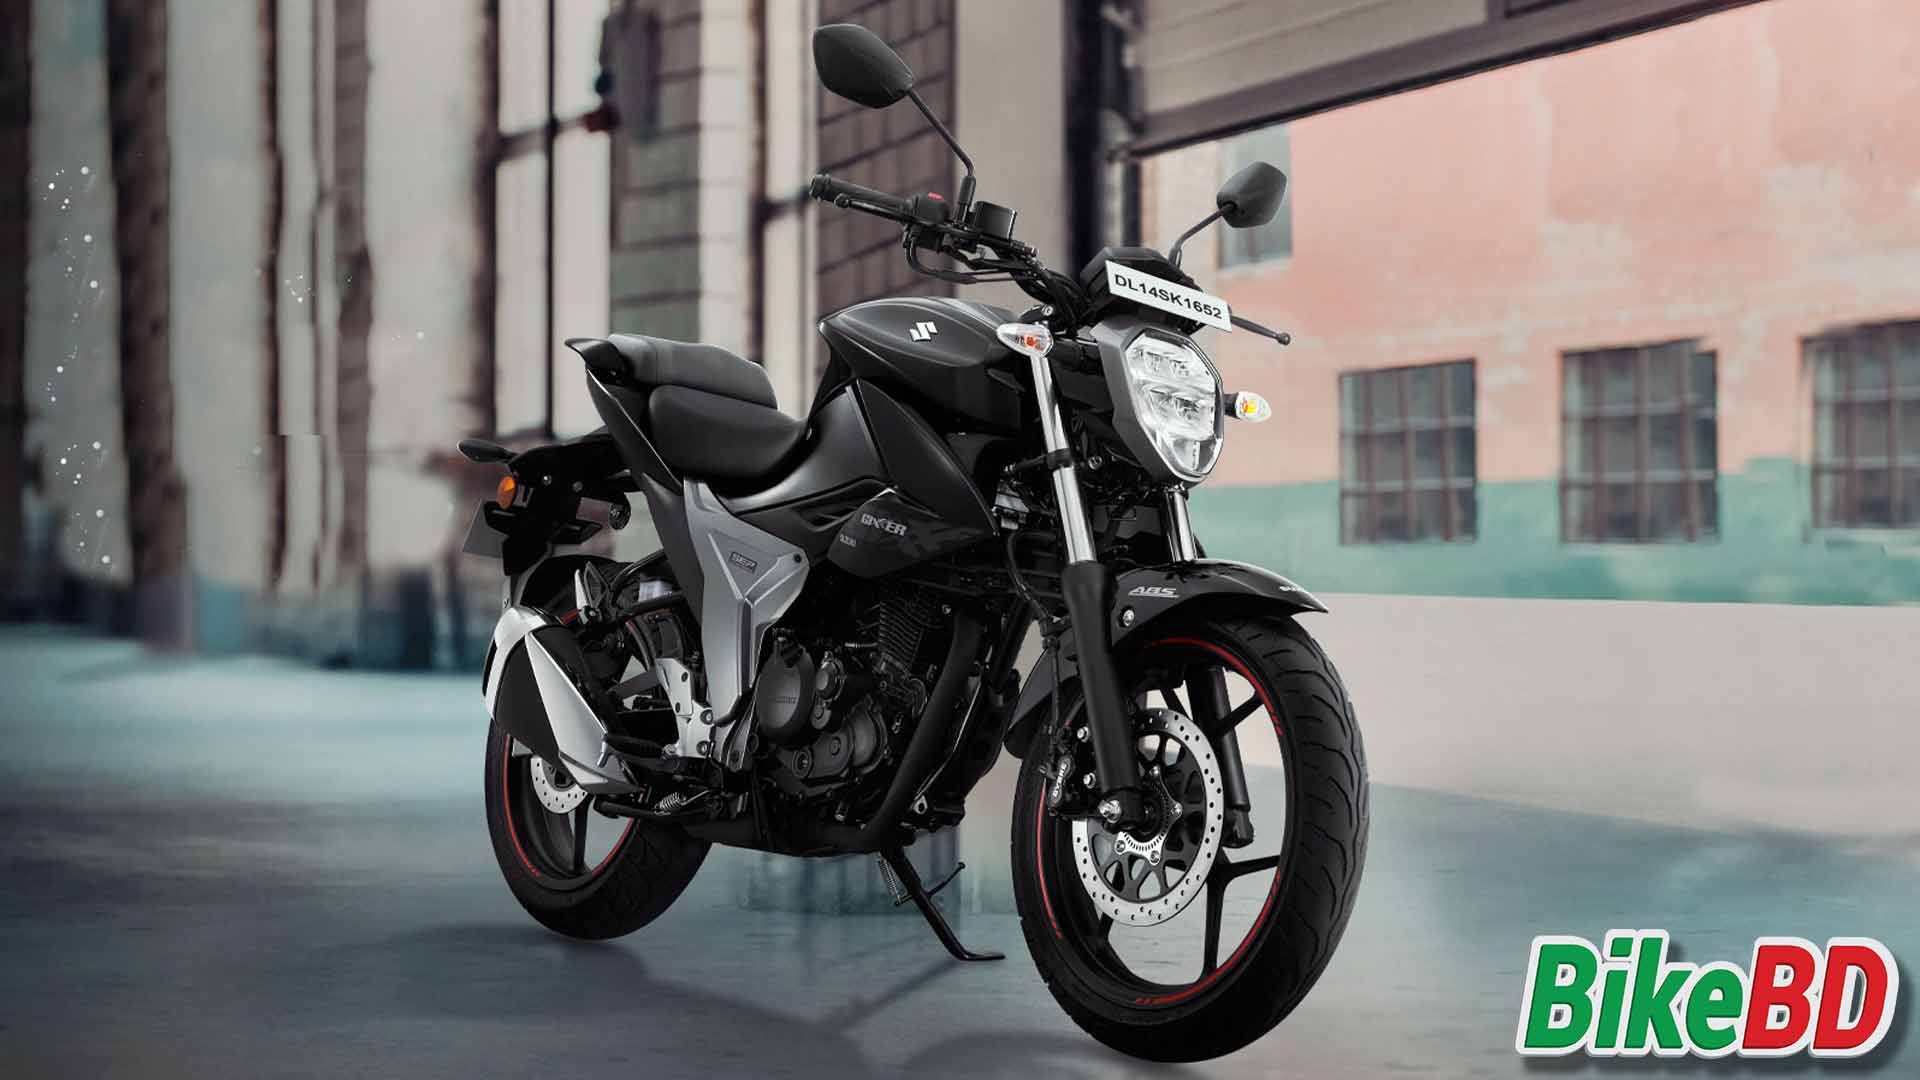 নতুন মডেলের Suzuki Gixxer 2019 লঞ্চ করা হলো ইন্ডিয়াতে !